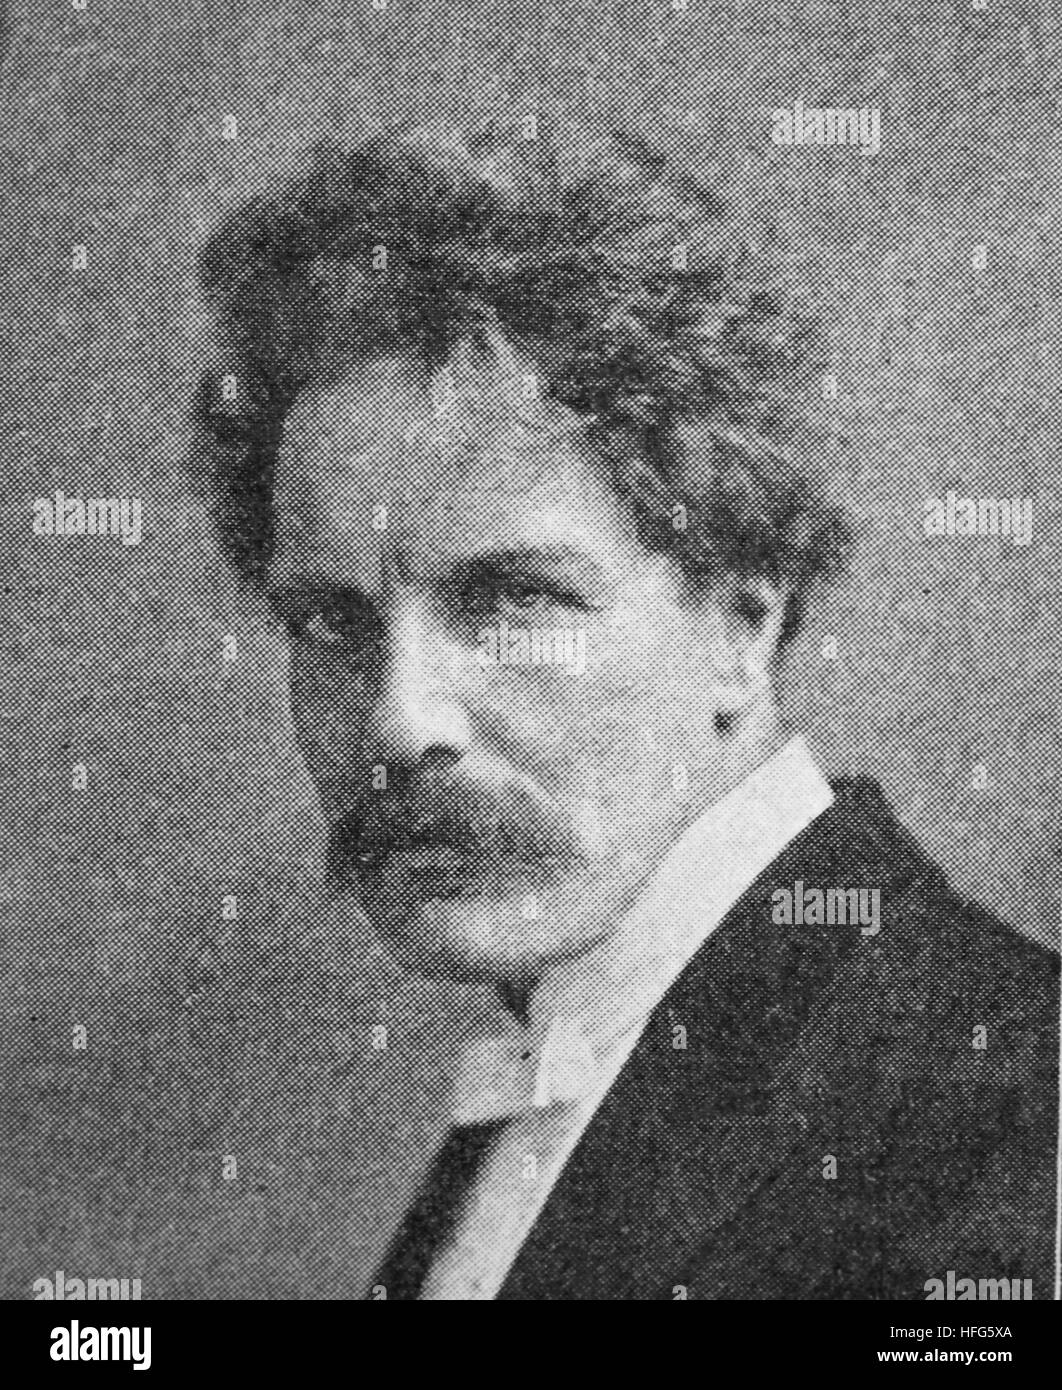 Ludwig Wuellner, 1858-1938, war ein deutscher Konzert- und Schauspieler sowie ein Rezitator, Reproduktion Foto aus dem Jahr 1895, digital verbessert Stockfoto